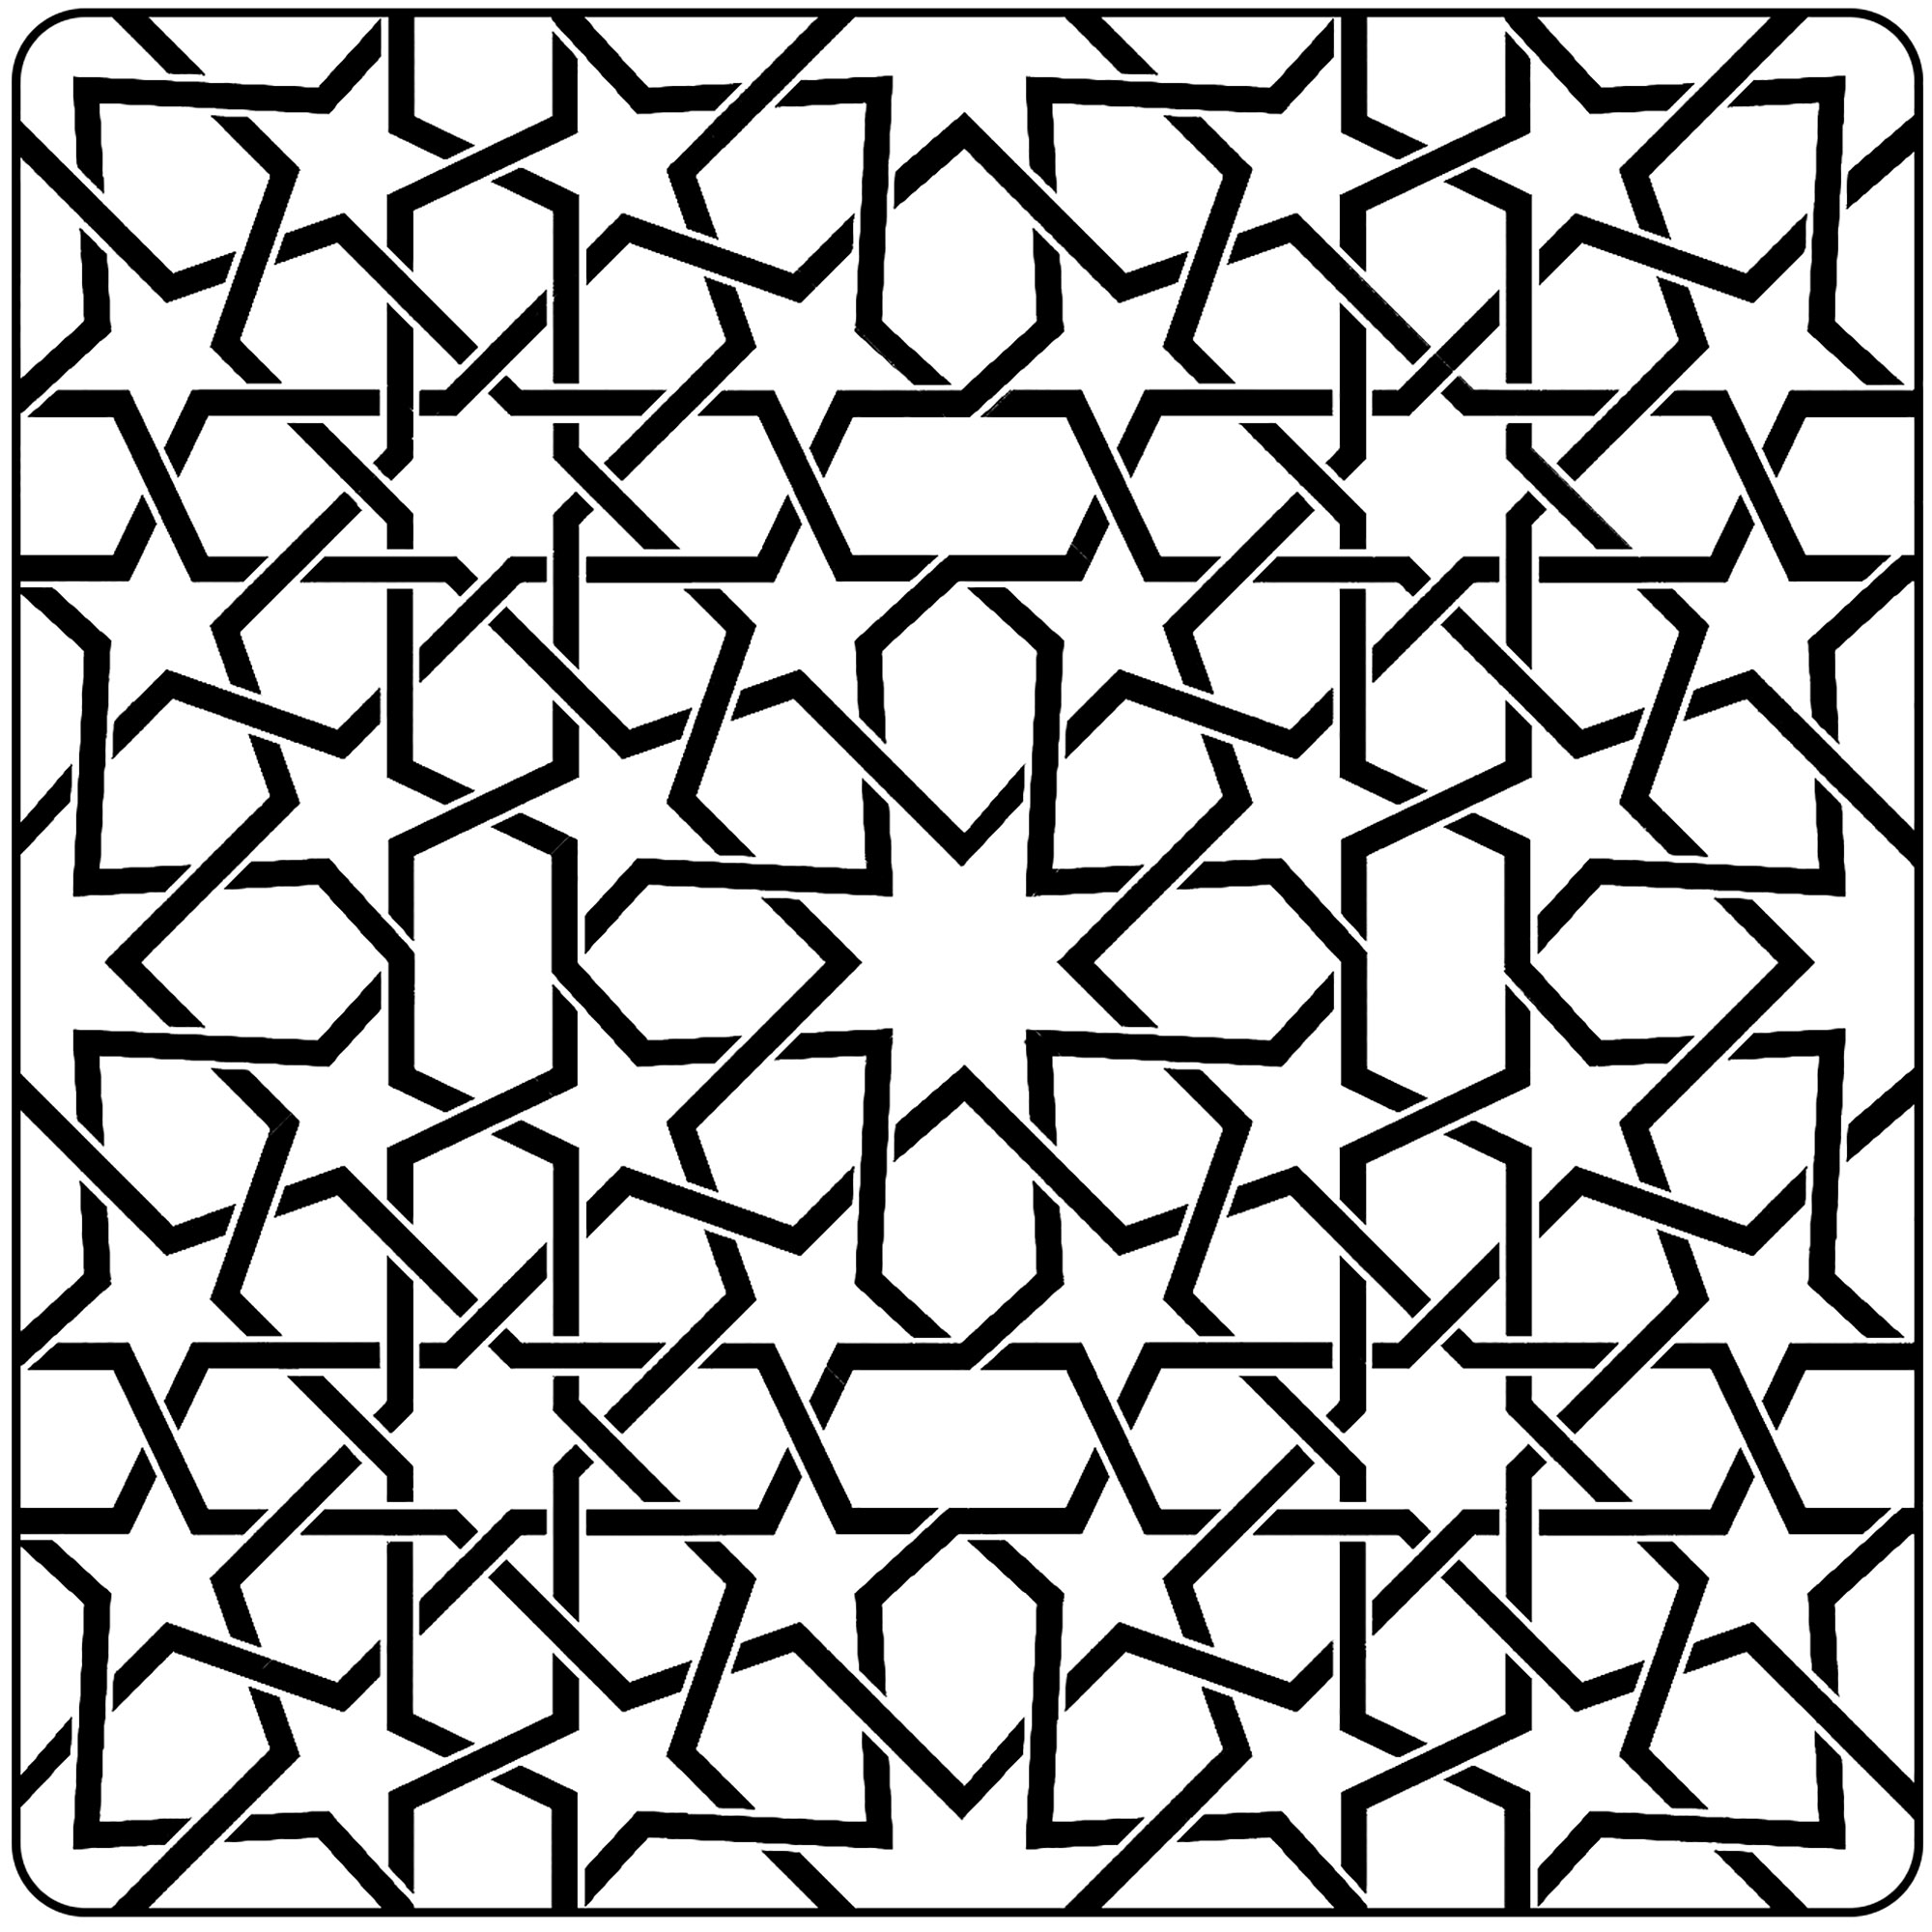 Arte morisco - líneas inacabadas. Bonitos motivos inspirados en el arte morisco. Ten en cuenta que las líneas no están acabadas, por lo que las formas no son completas, ¡así que colorear este dibujo puede ser complicado!